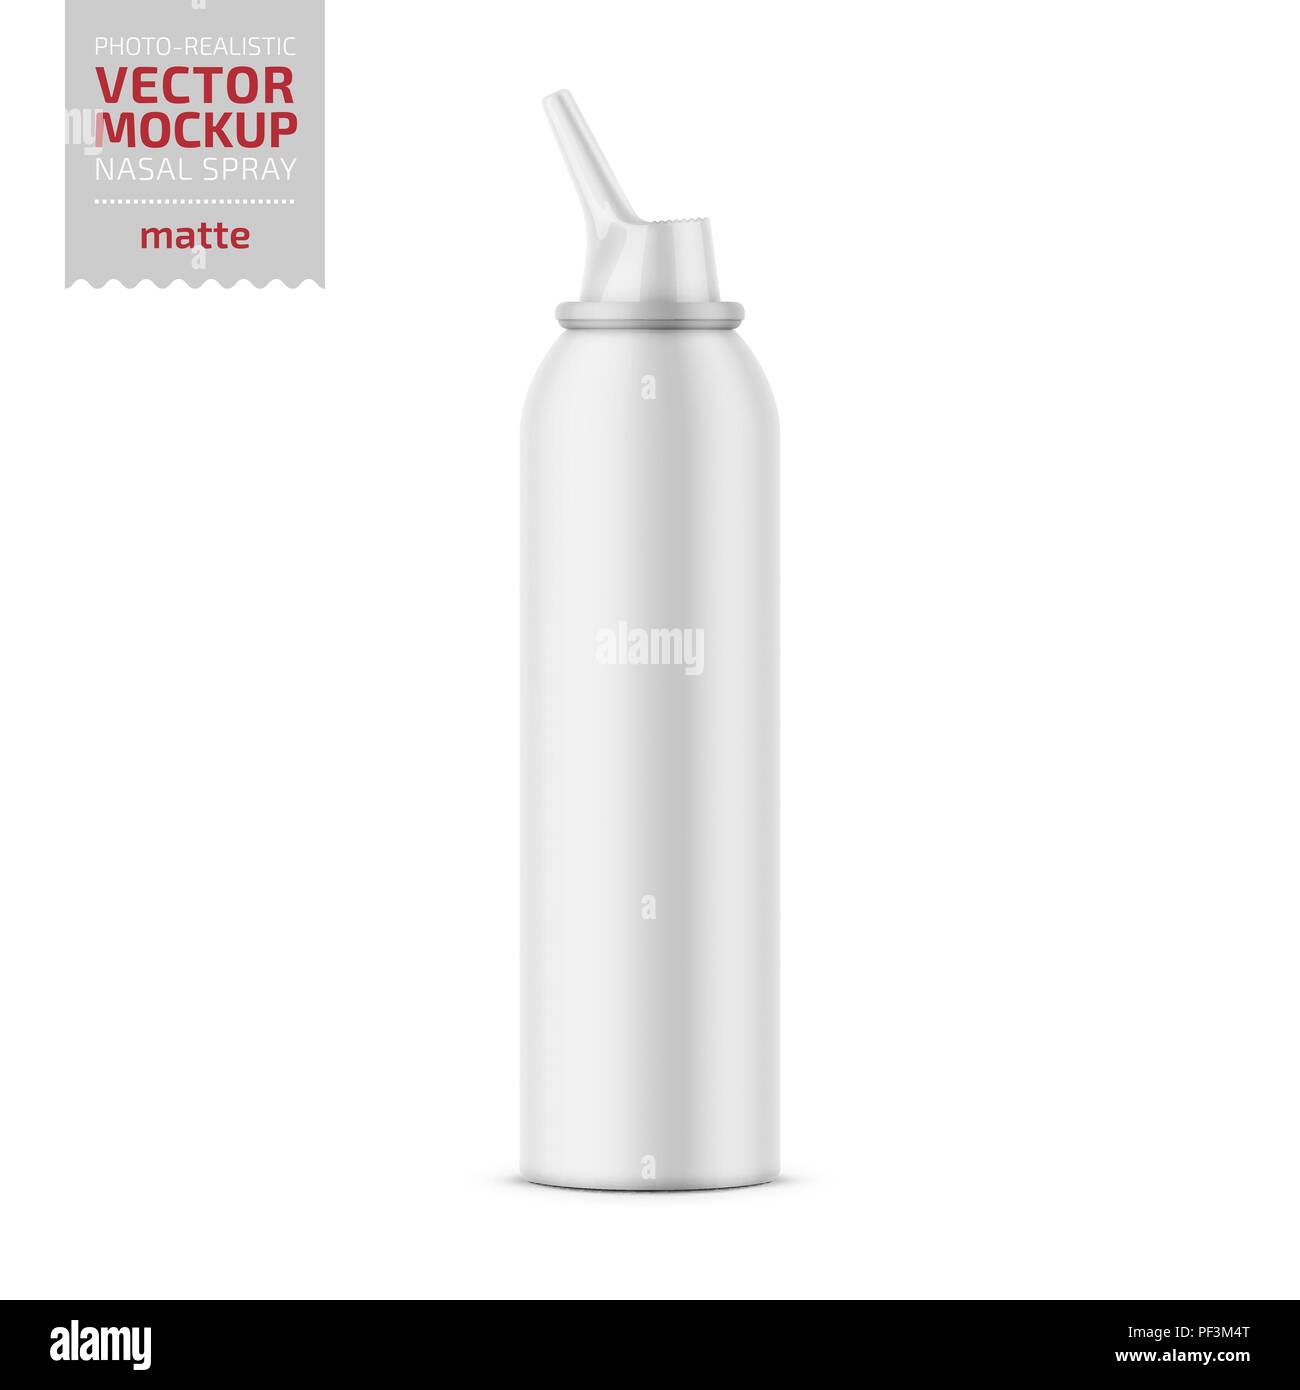 Botella aluminio colores 500 ml - RG regalos publicitarios